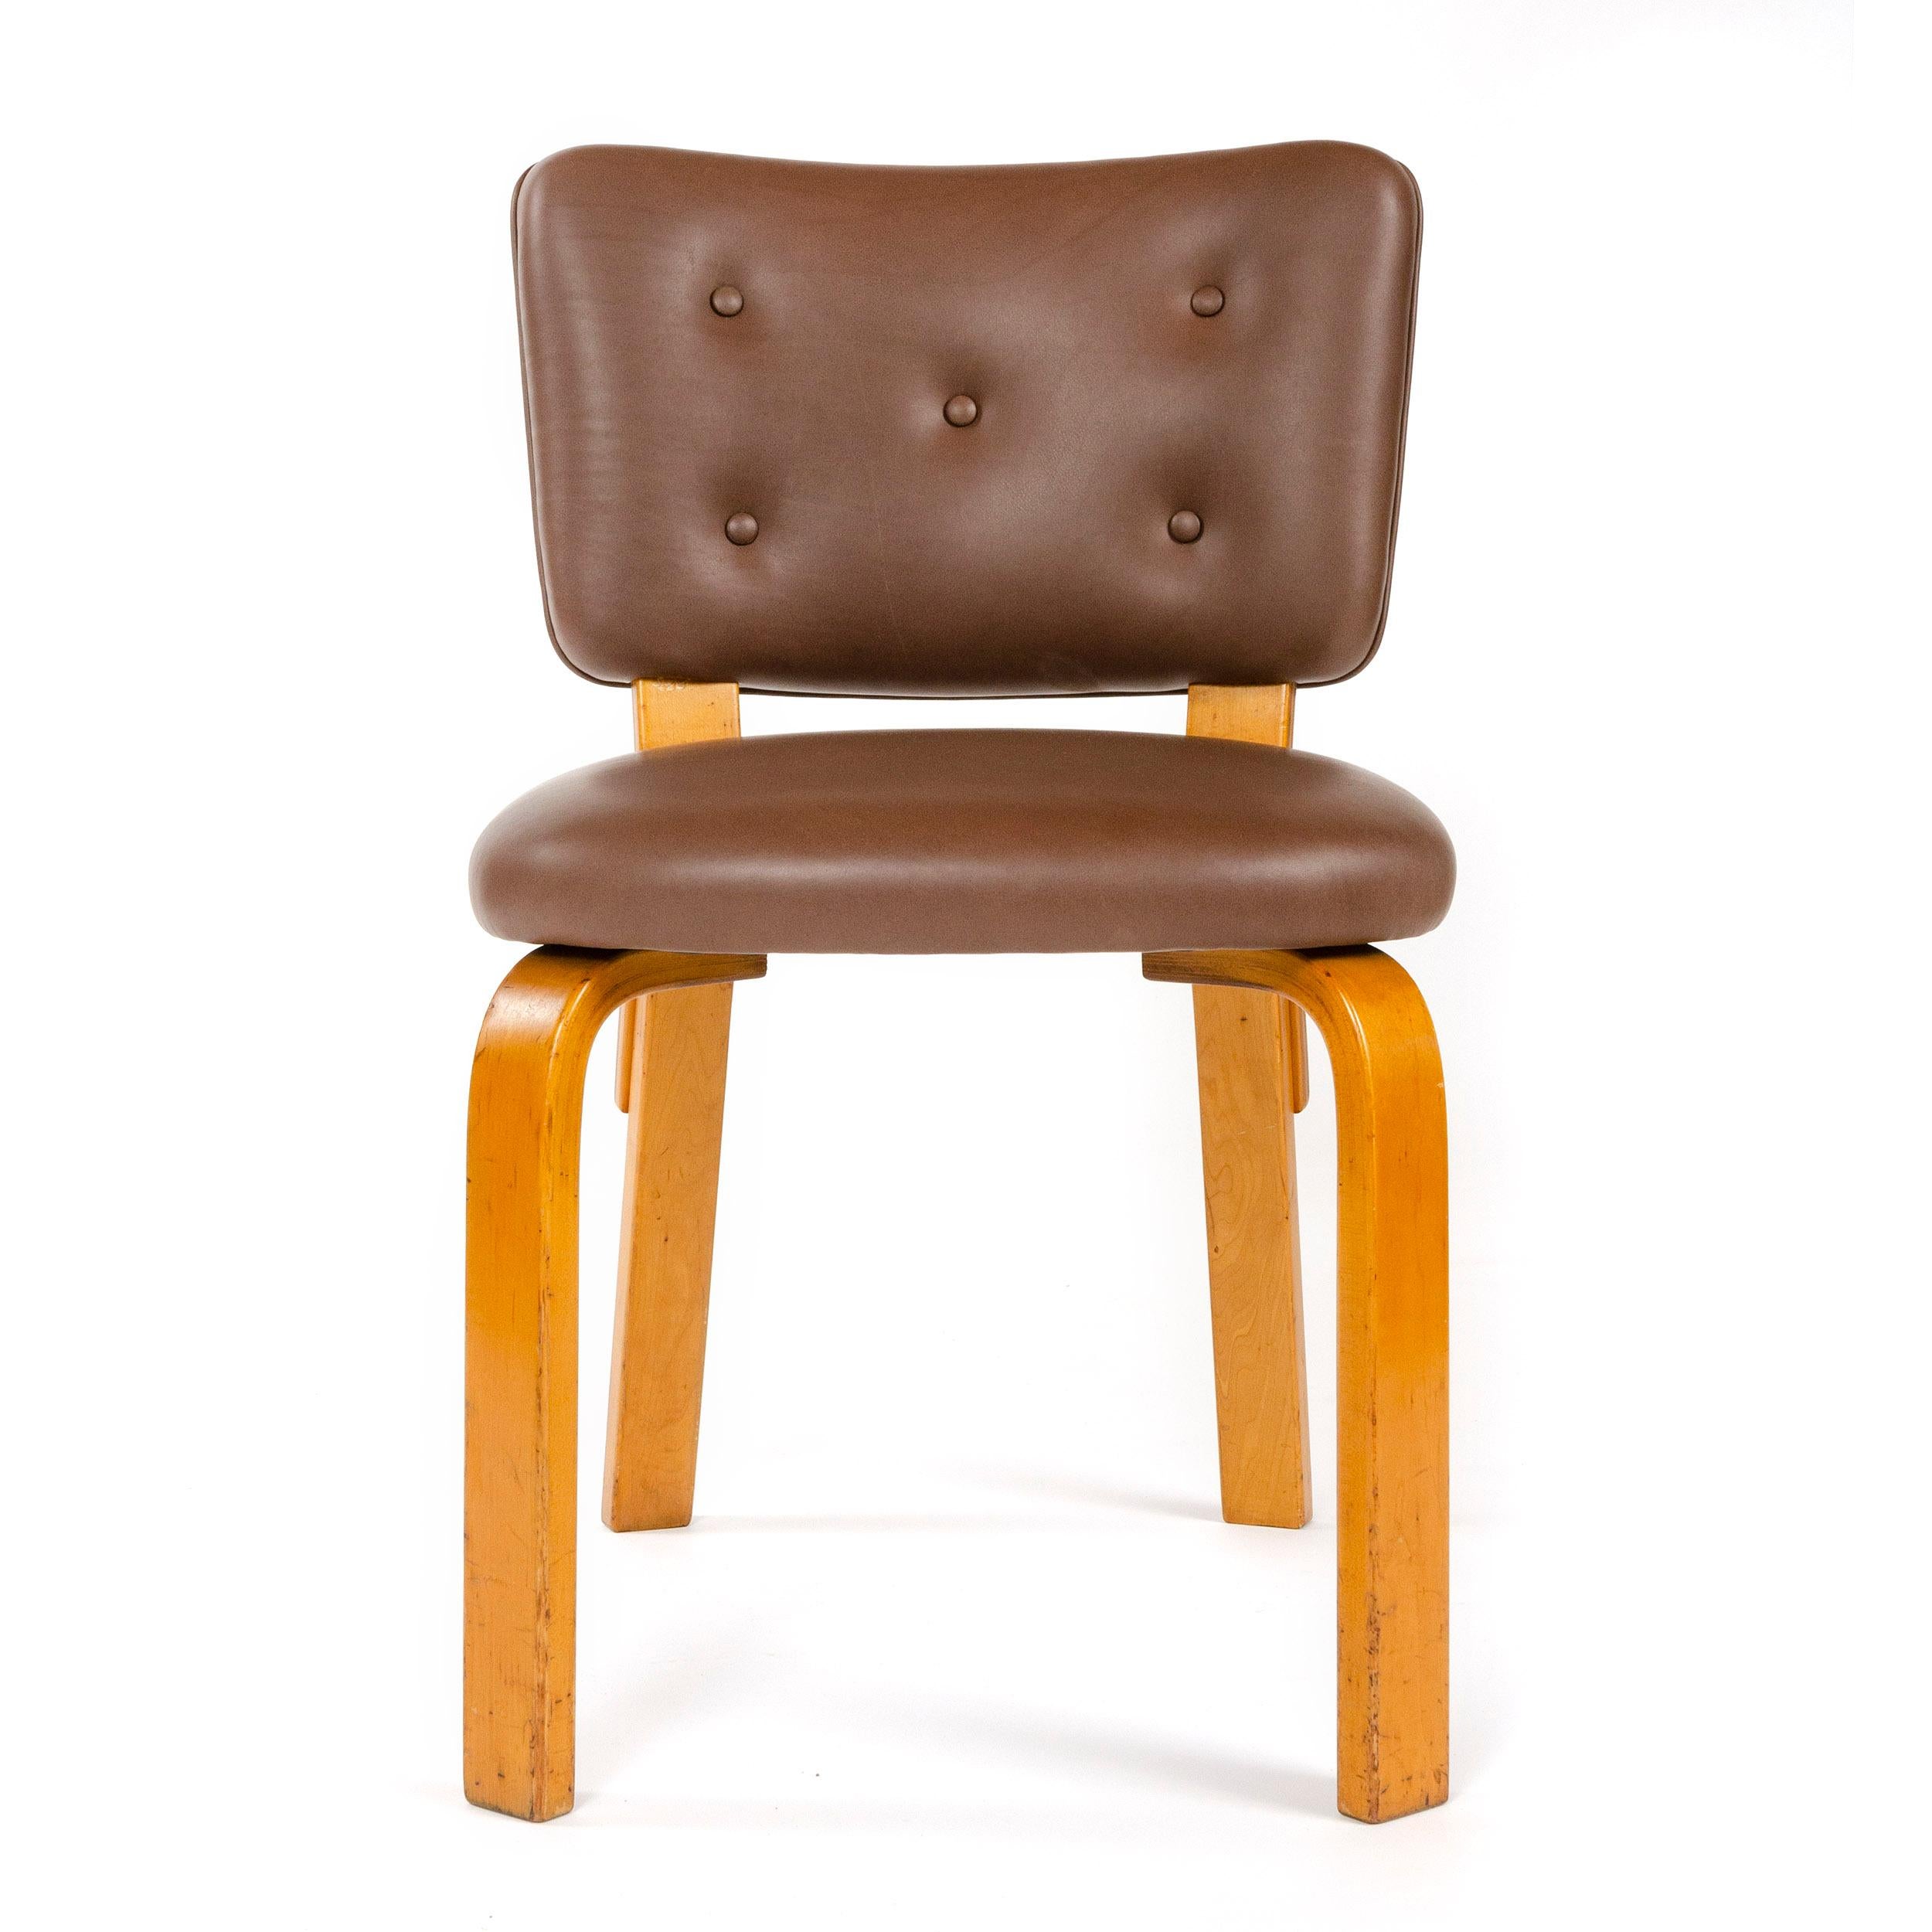 Ensemble de quatre chaises de salle à manger Alvar Aalto modèle n° 62 en bouleau laminé, produites par Artek à la fin des années 1940. Le modèle de cette liste, n° 62, est légèrement plus grand en échelle qu'un modèle Aalto très similaire, n° 63,